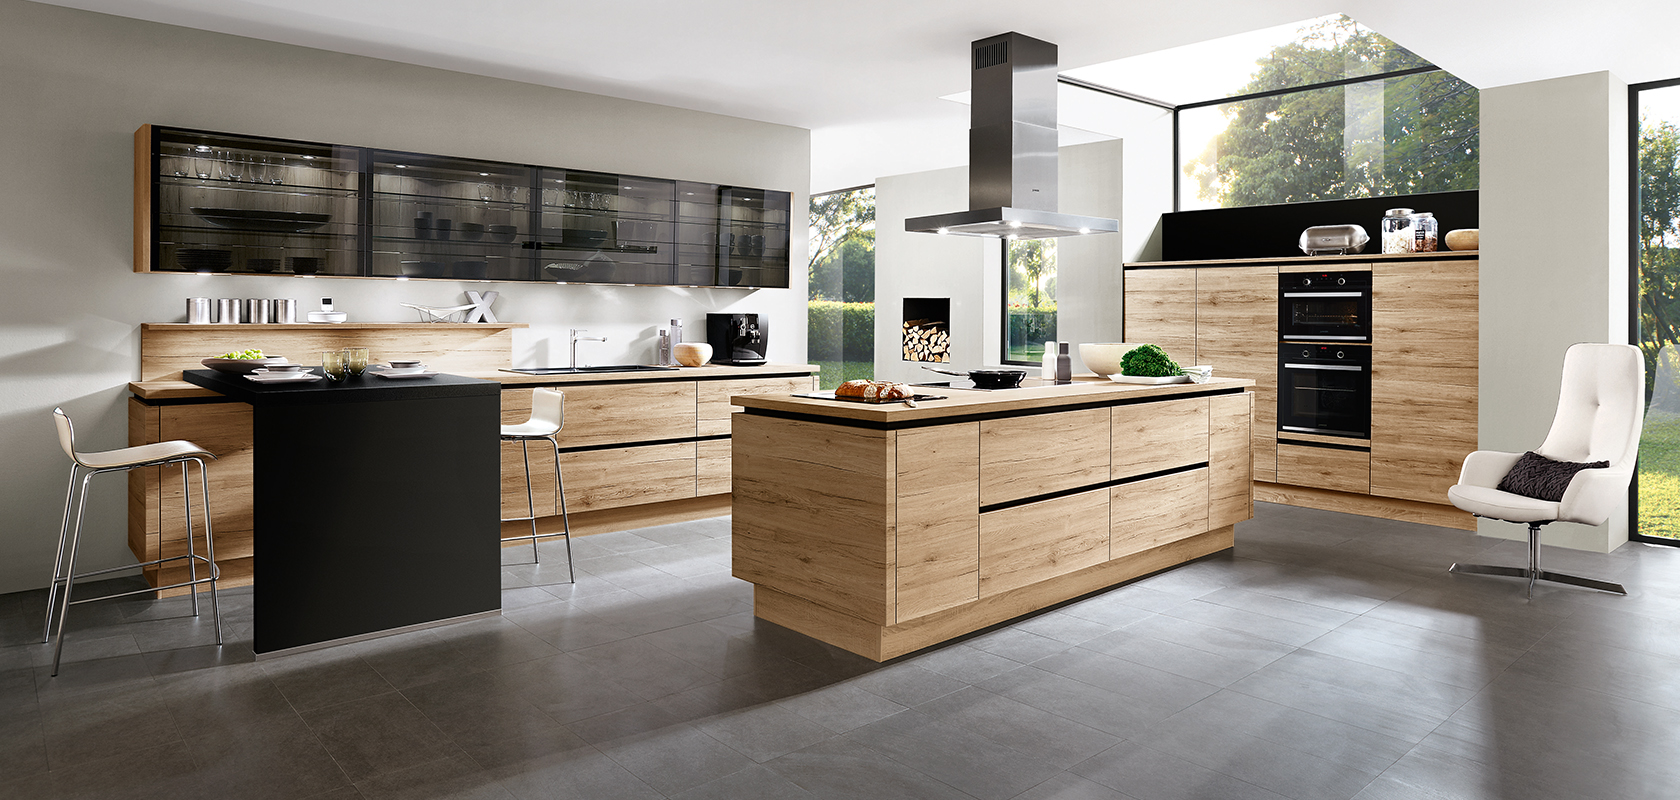 Diseño interior de cocina moderna con electrodomésticos negros elegantes, gabinetes de madera y una isla central con una estética minimalista y abundante luz natural.